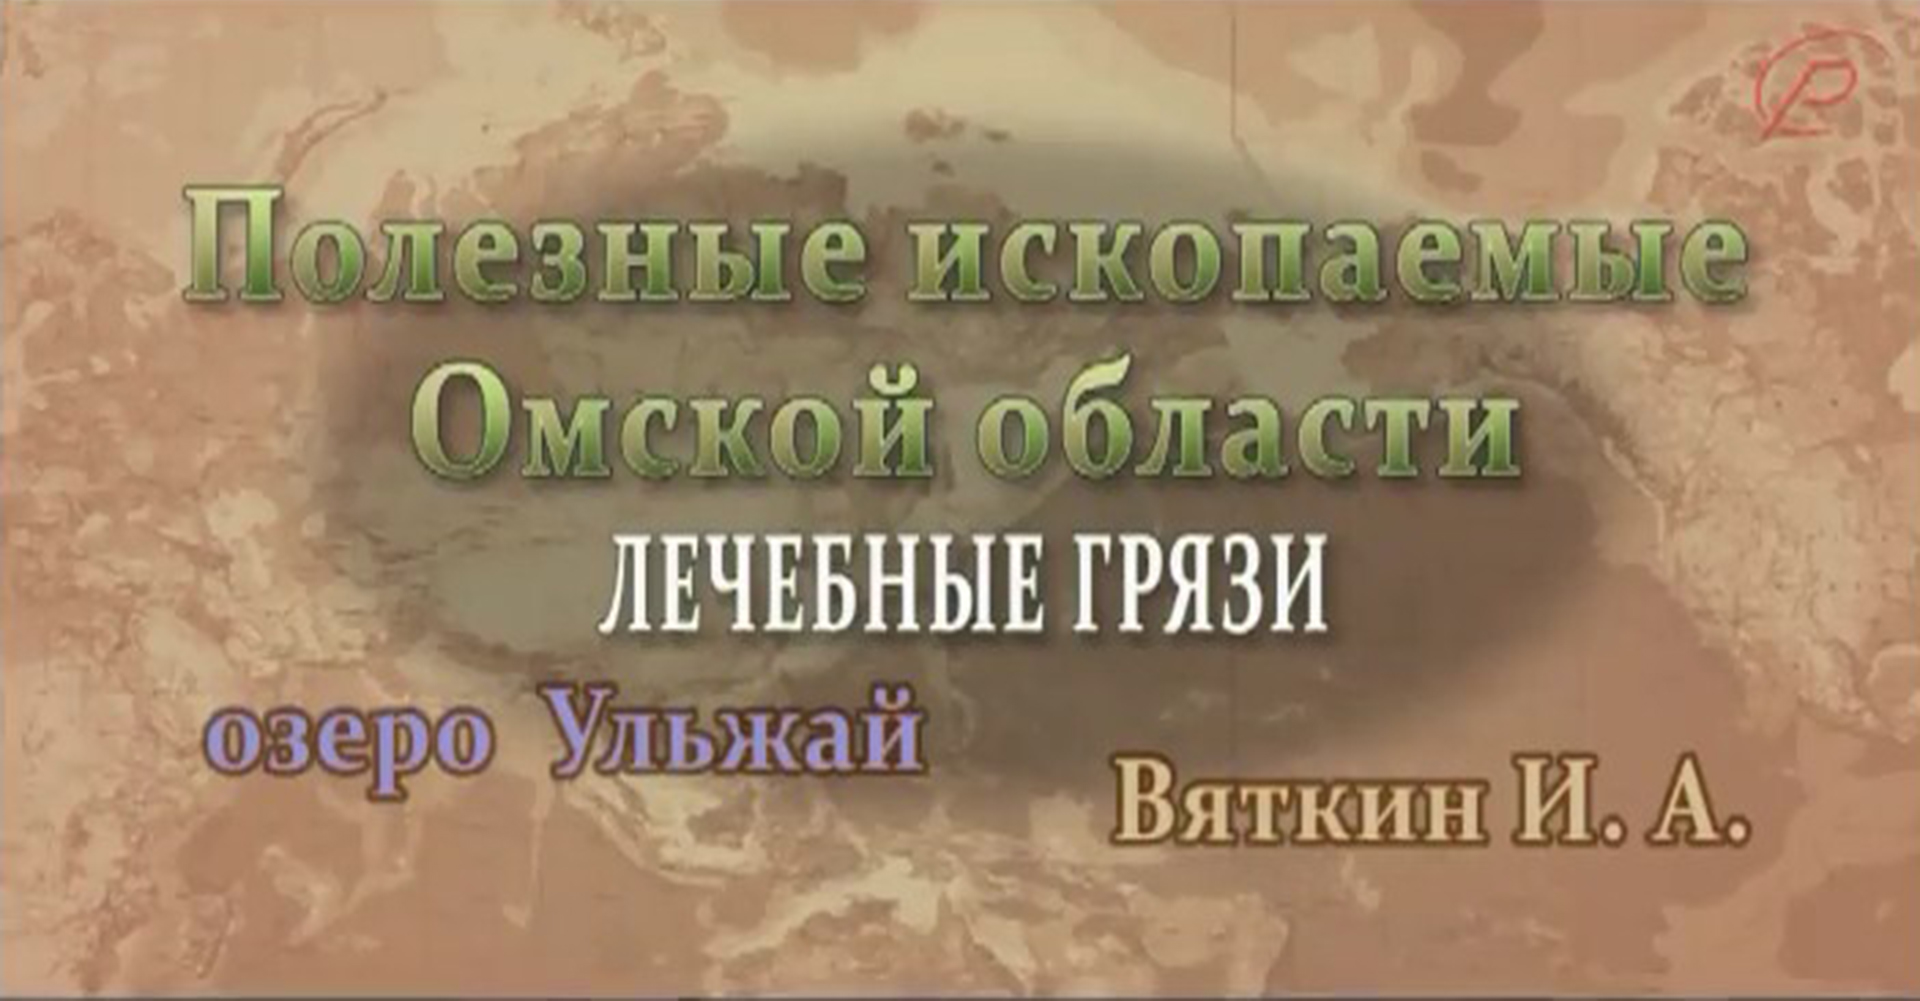 Полезные ископаемые Омской области - лечебные грязи